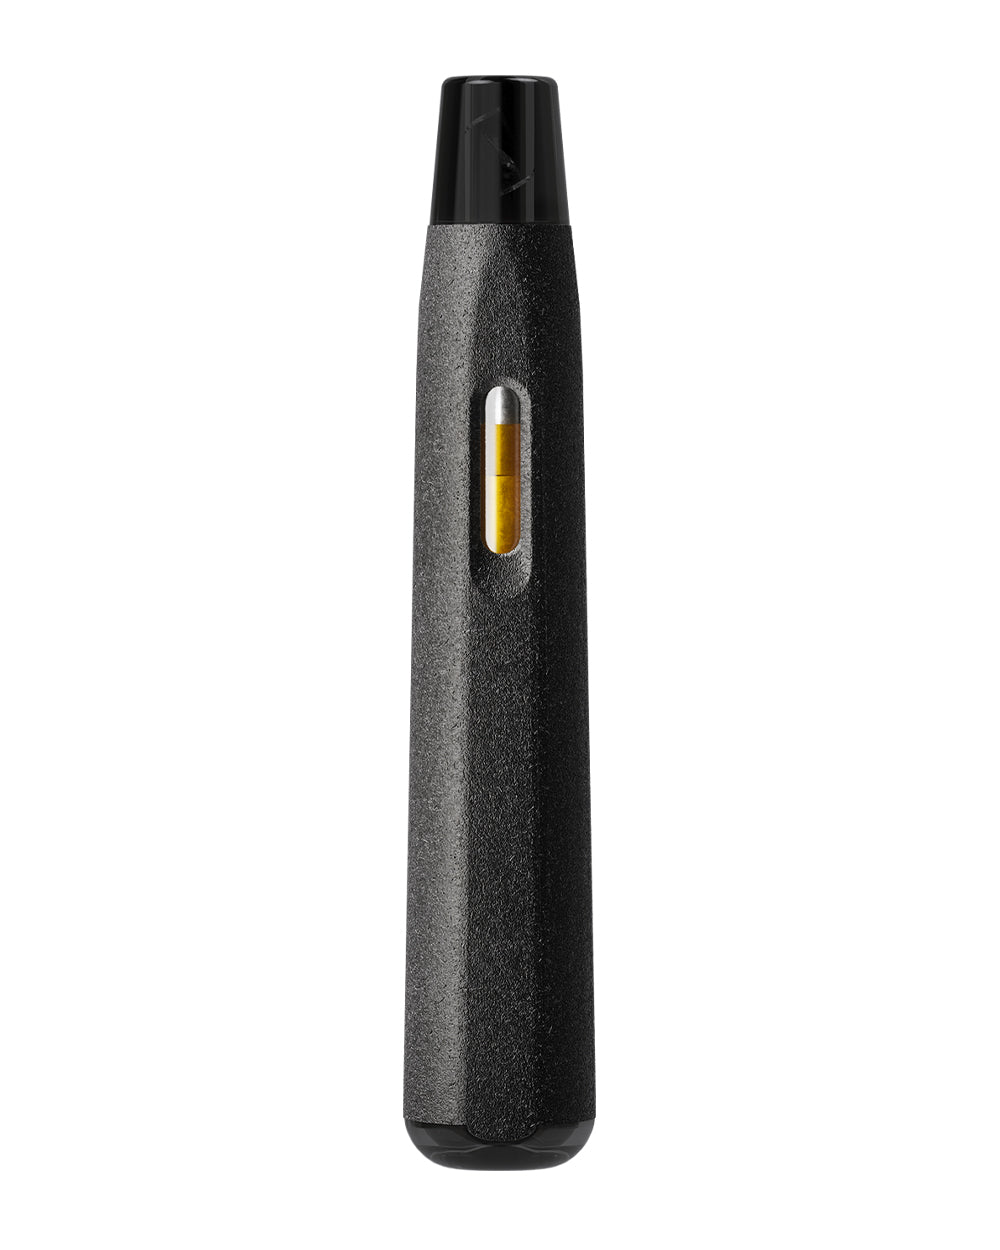 AVD | Stem Black Hemp Plastic Blend Rechargeable Disposable Vape Pen w/ Black Vortex Mouthpiece | 1mL - 220 mAh  - 1